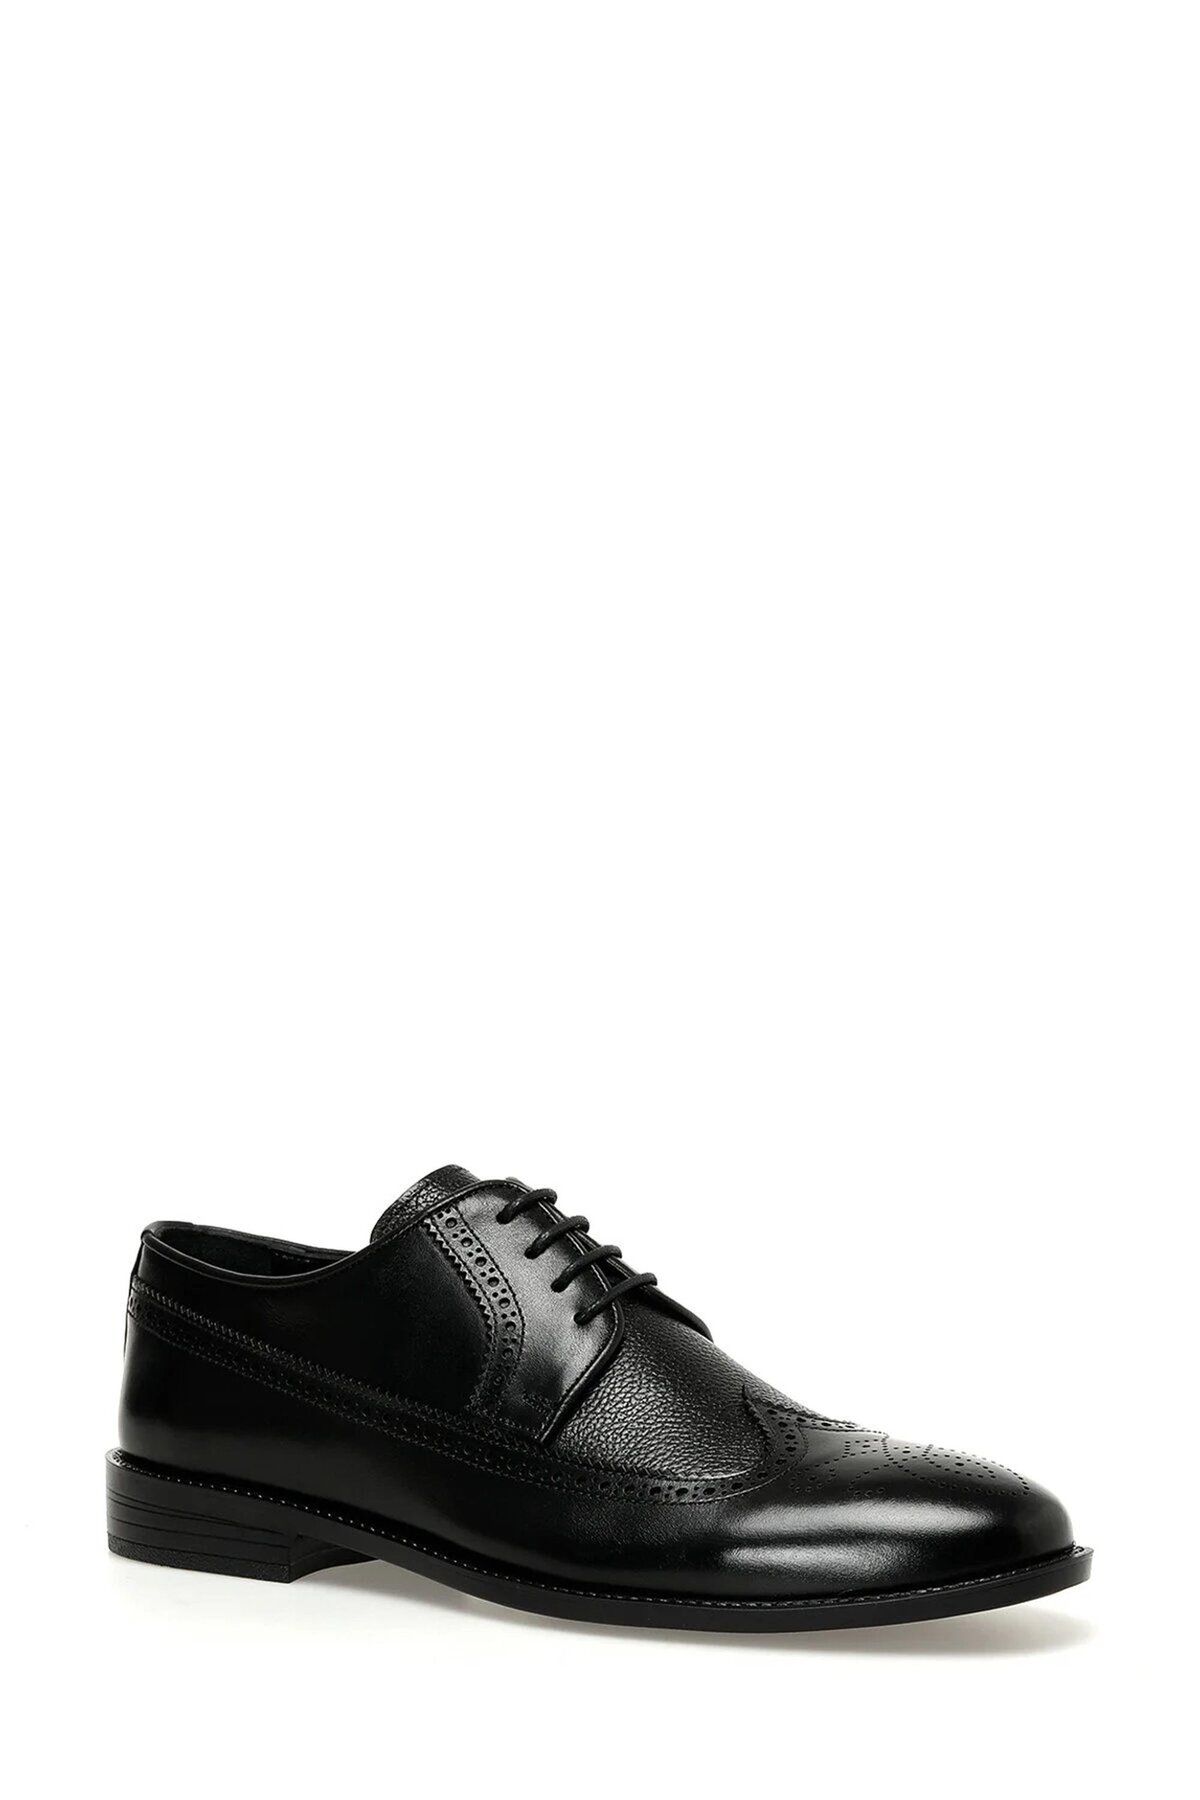 İnci A10154448412010 4p Acel 4fx Siyah Erkek Klasik Ayakkabı